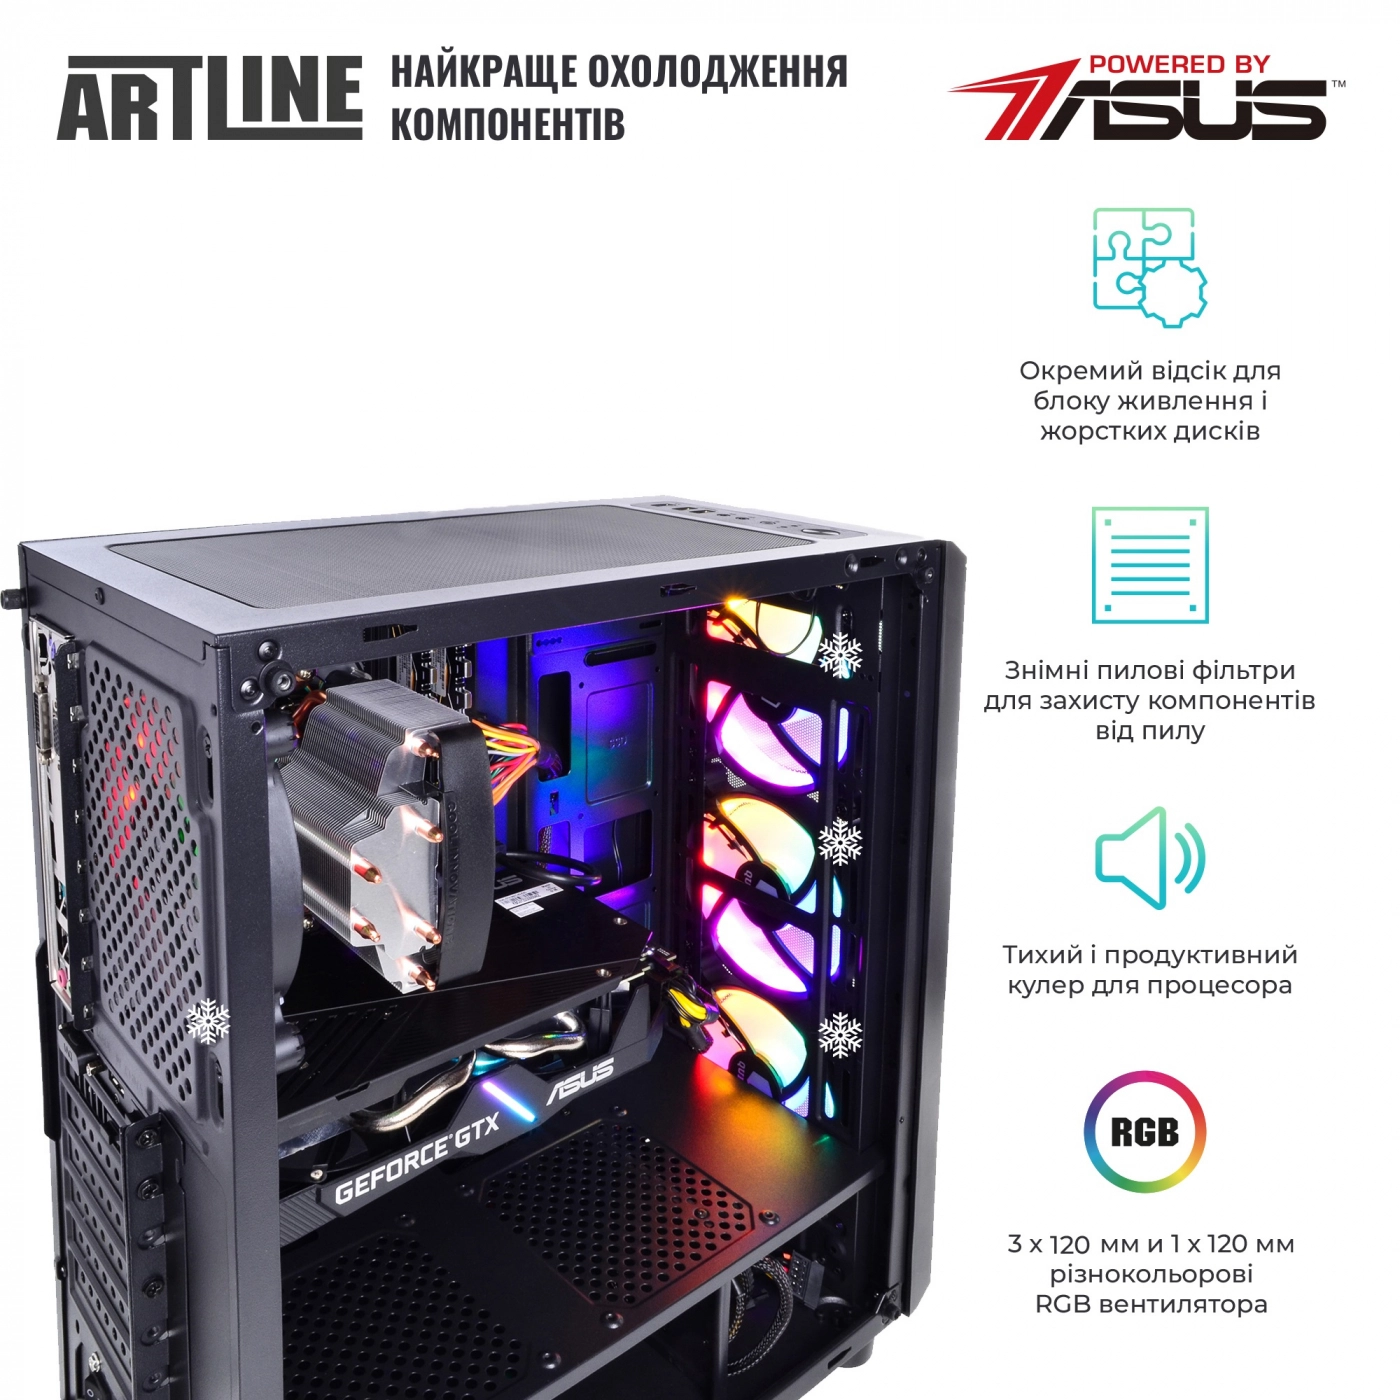 Купить Компьютер ARTLINE Gaming X84v16 - фото 3